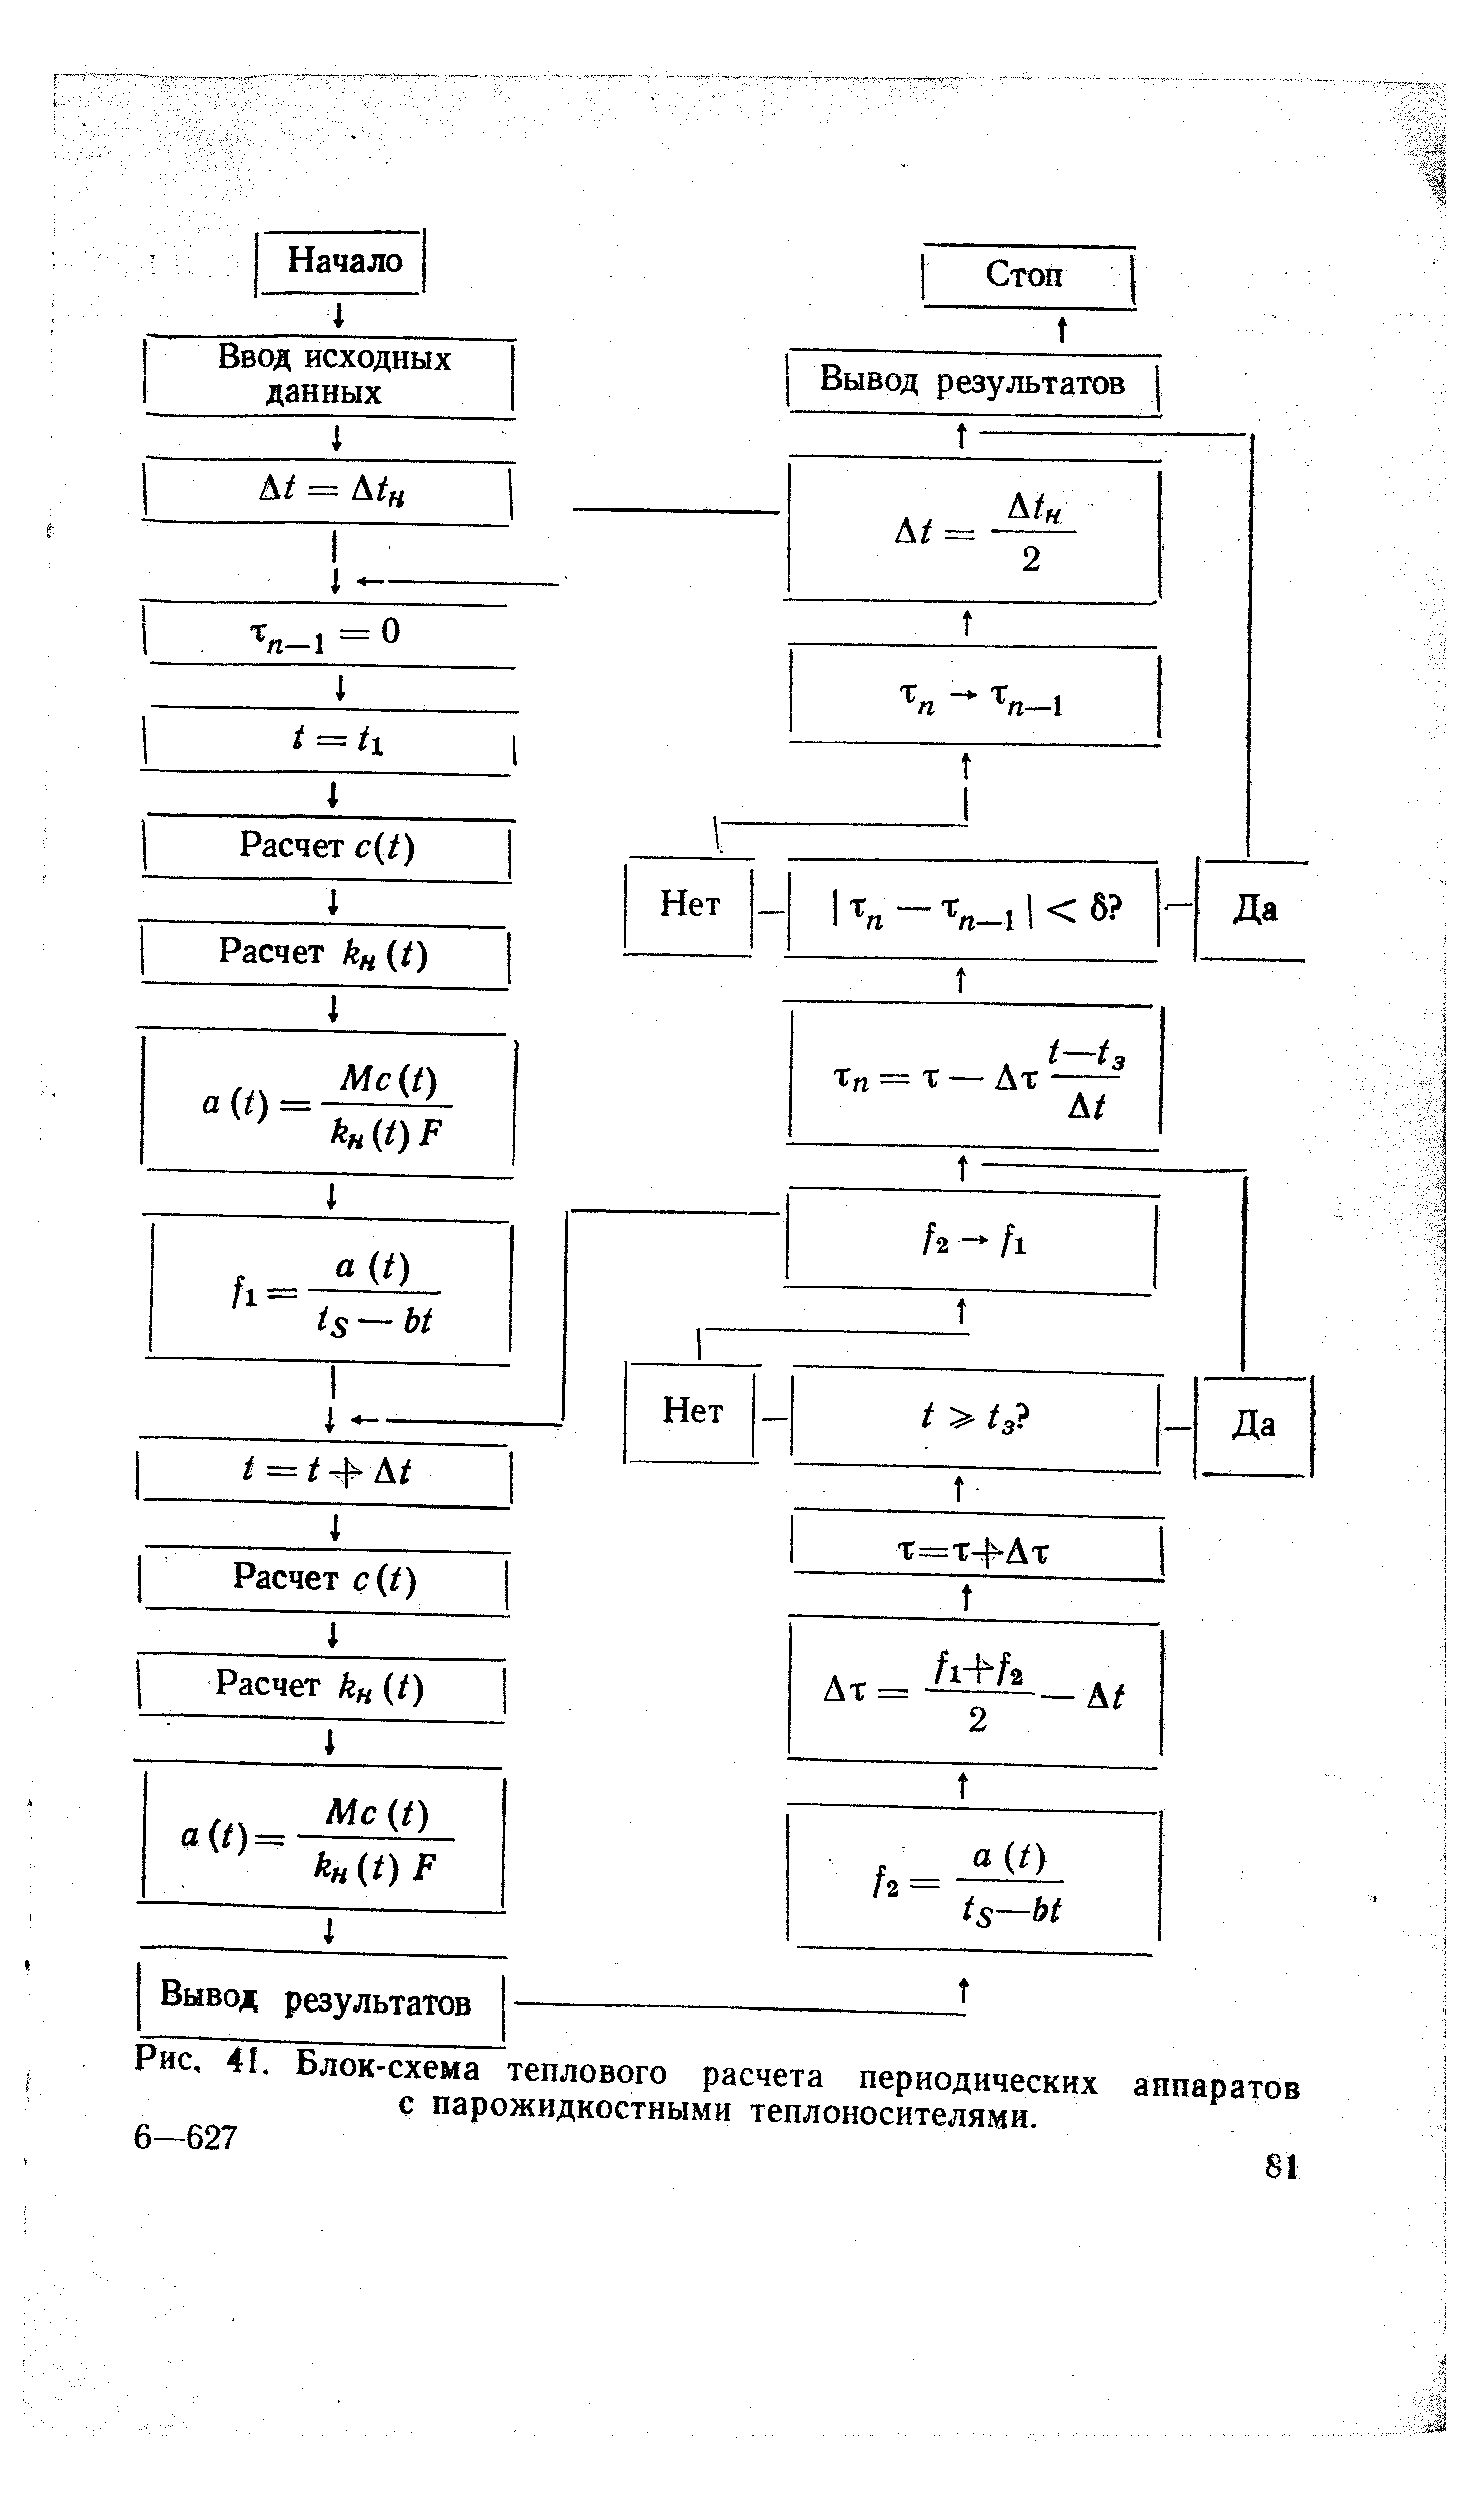 Блок-схема теплового расчета периодических аппаратов с парожидкостными теплоносителями.